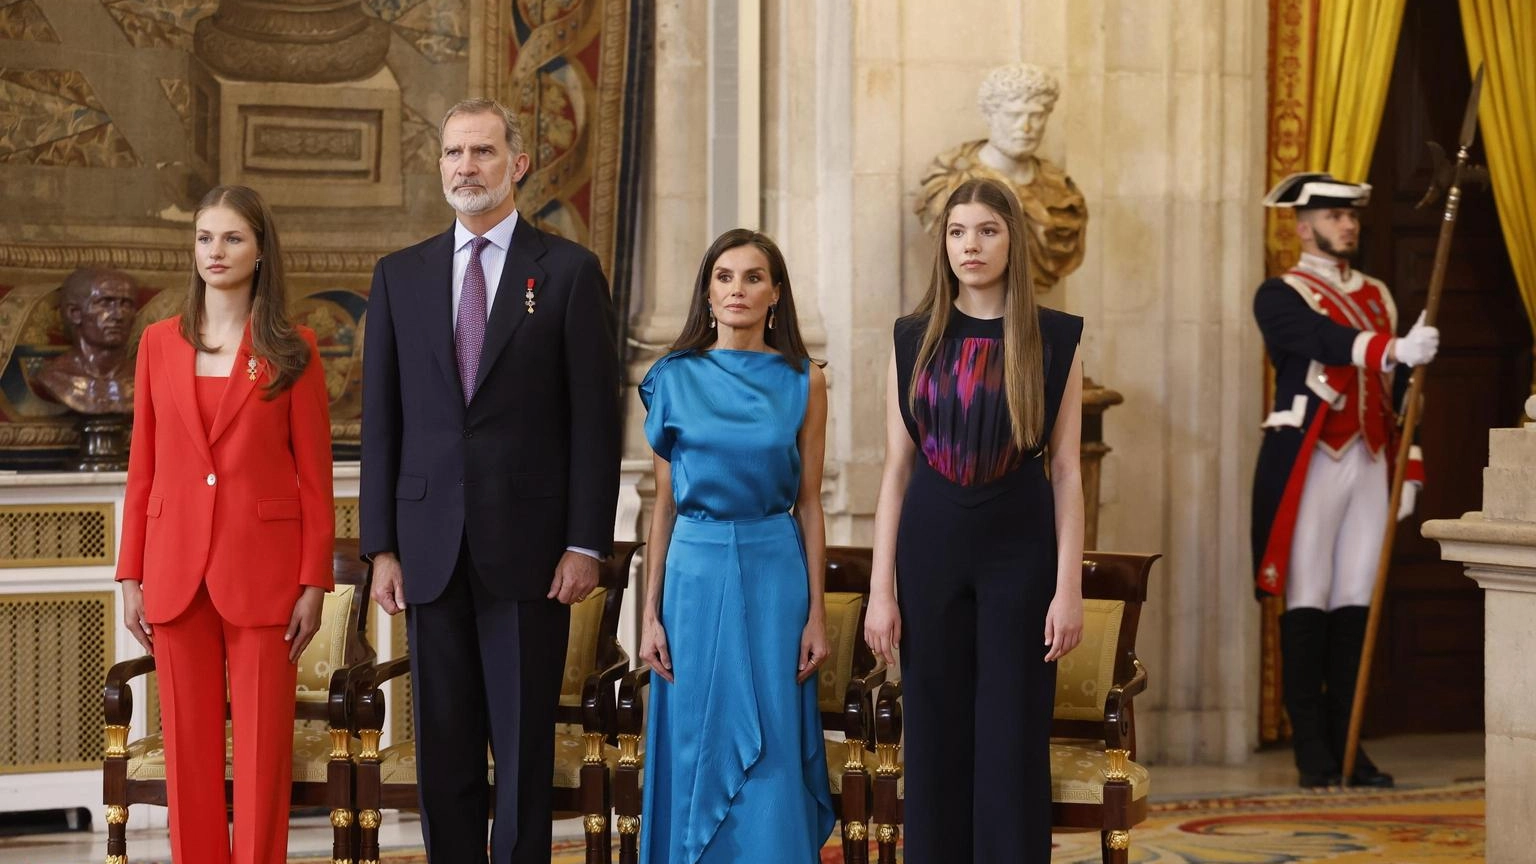 Al Palazzo Reale cerimonia per i 10 anni di regno di Felipe VI